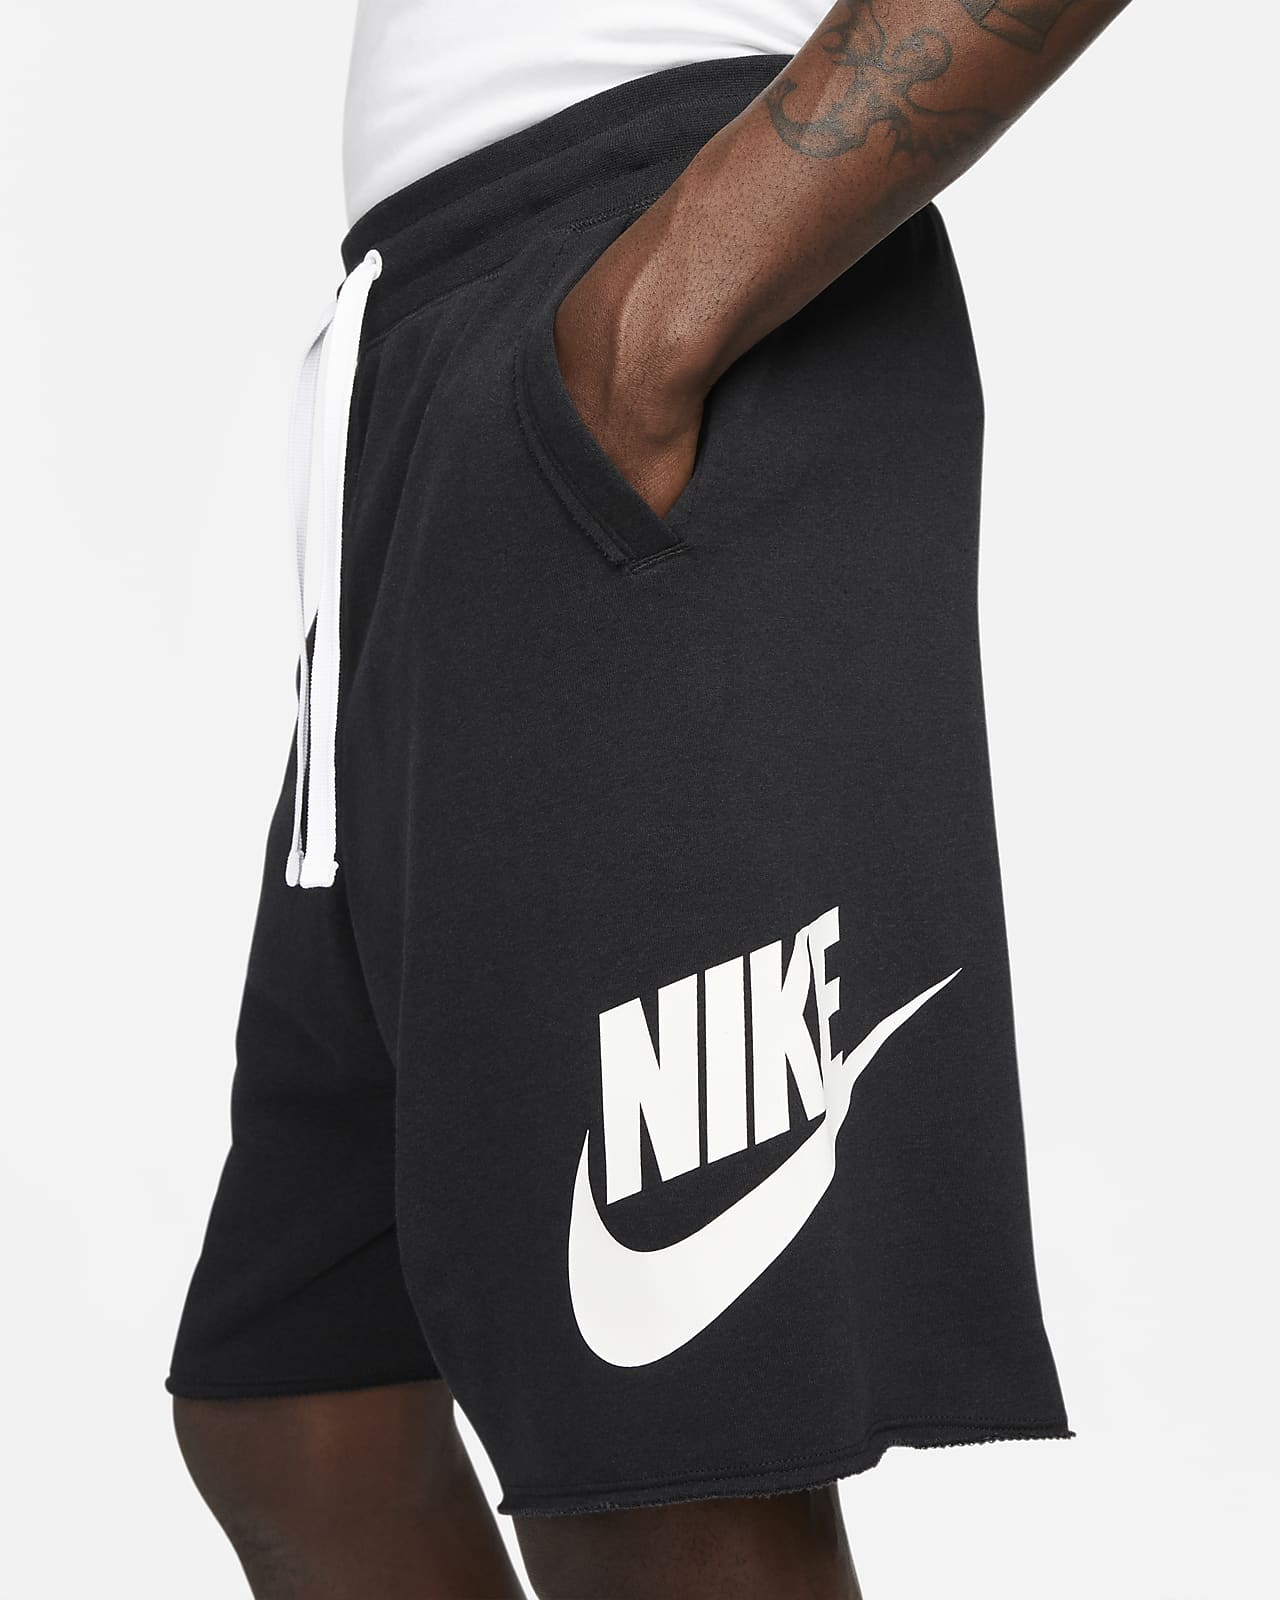 Nike Mens Sportswear Club Stretch Shorts Grey M